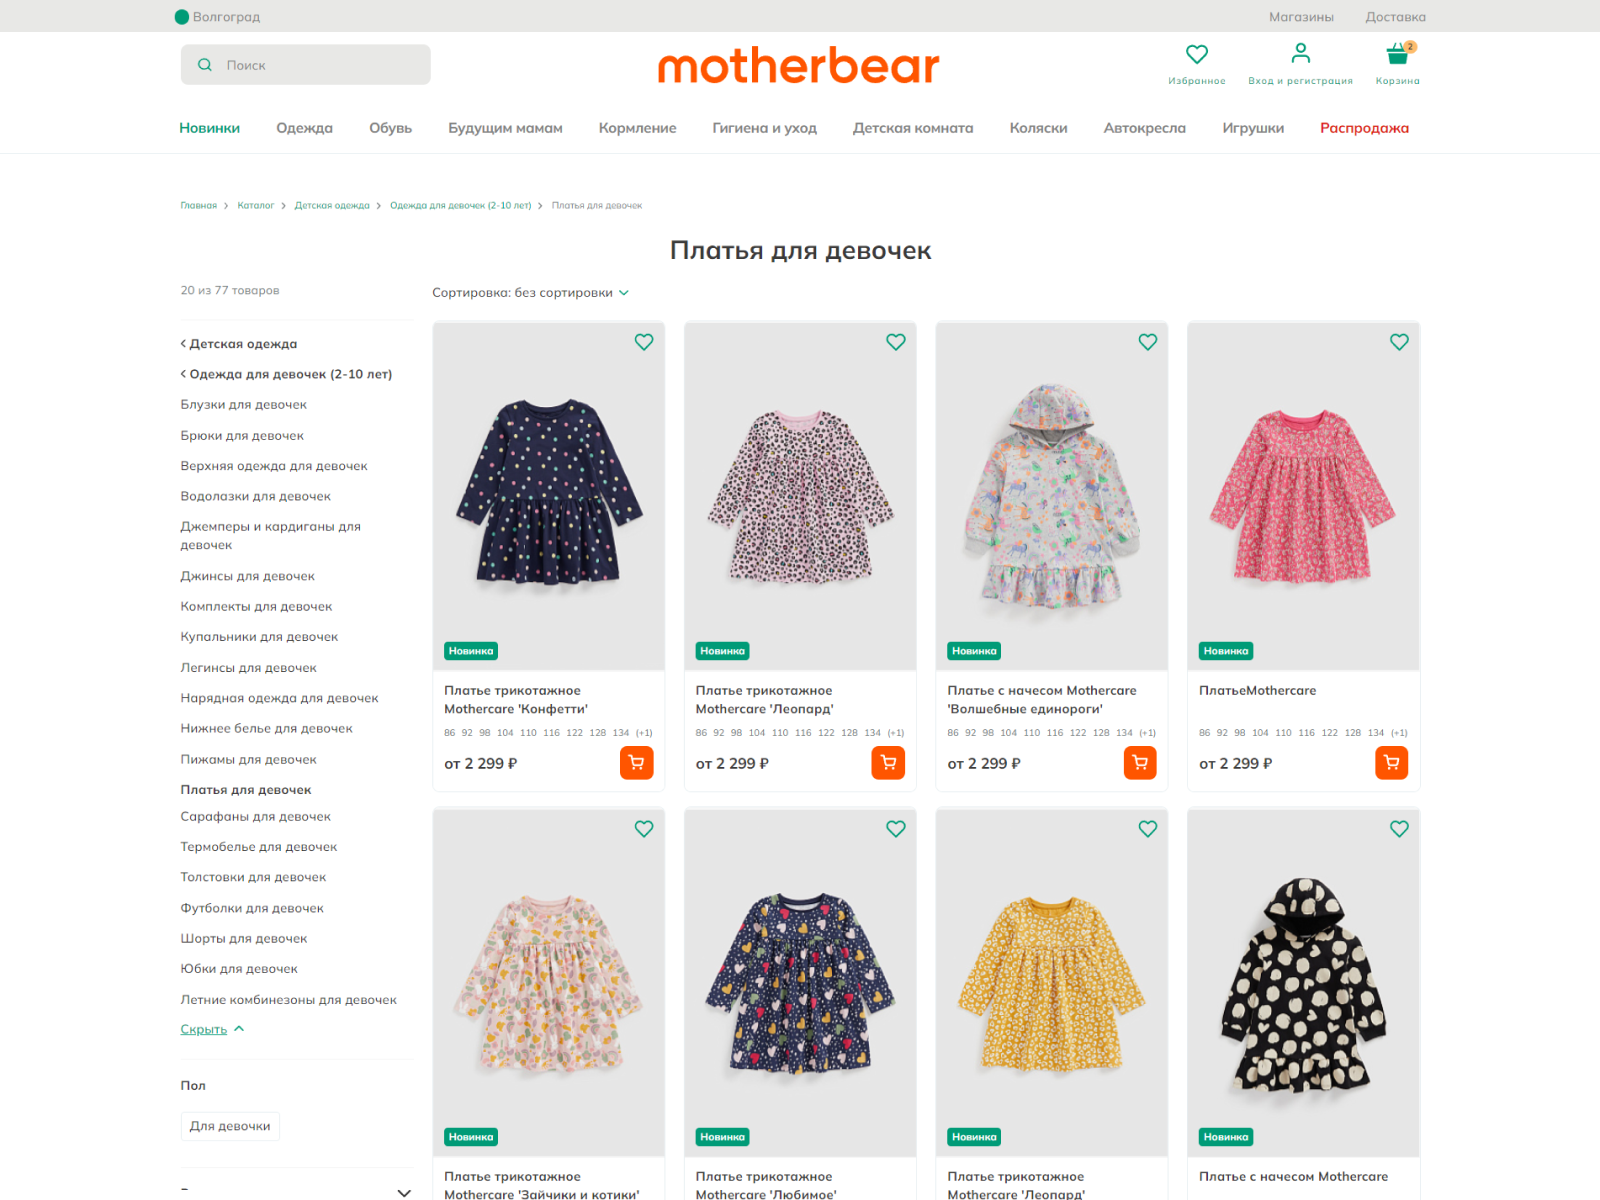 интернет-магазин motherbear